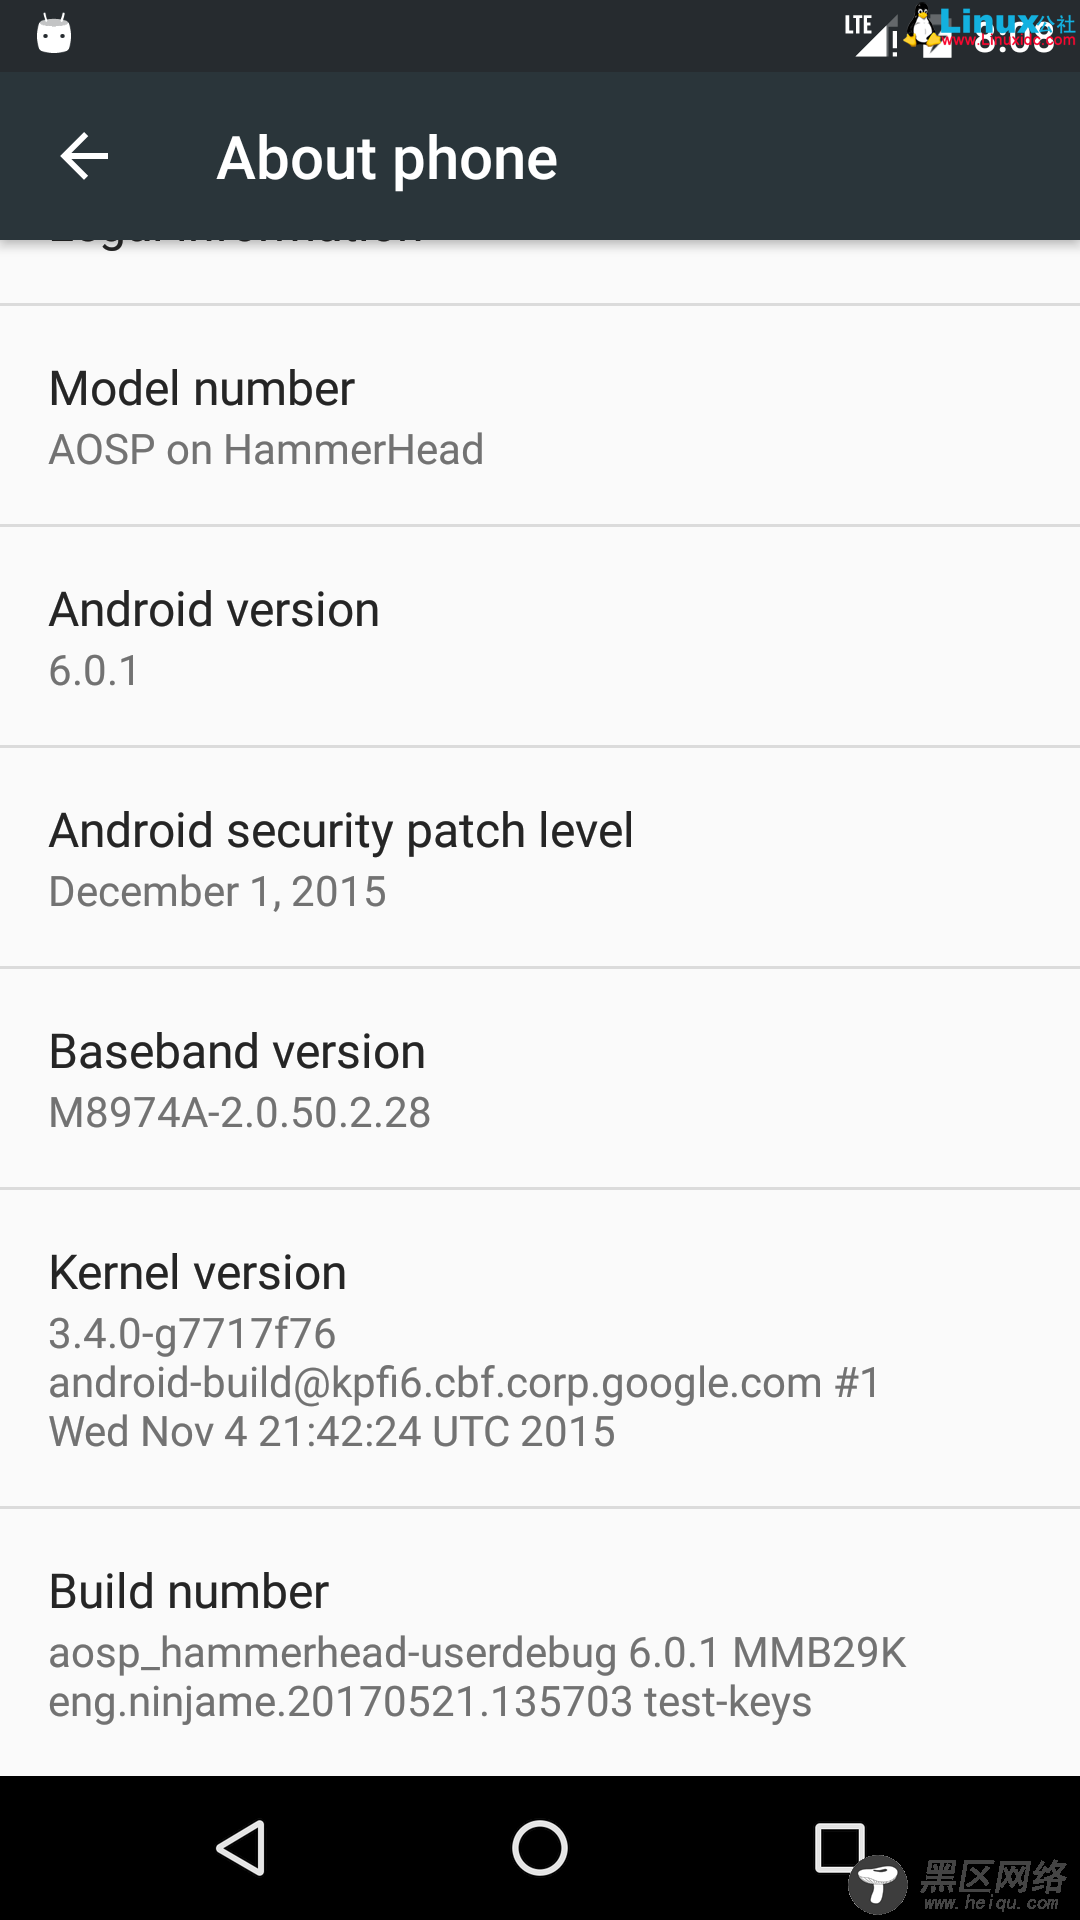 Android 6.0源码编译及烧录到真机过程记录